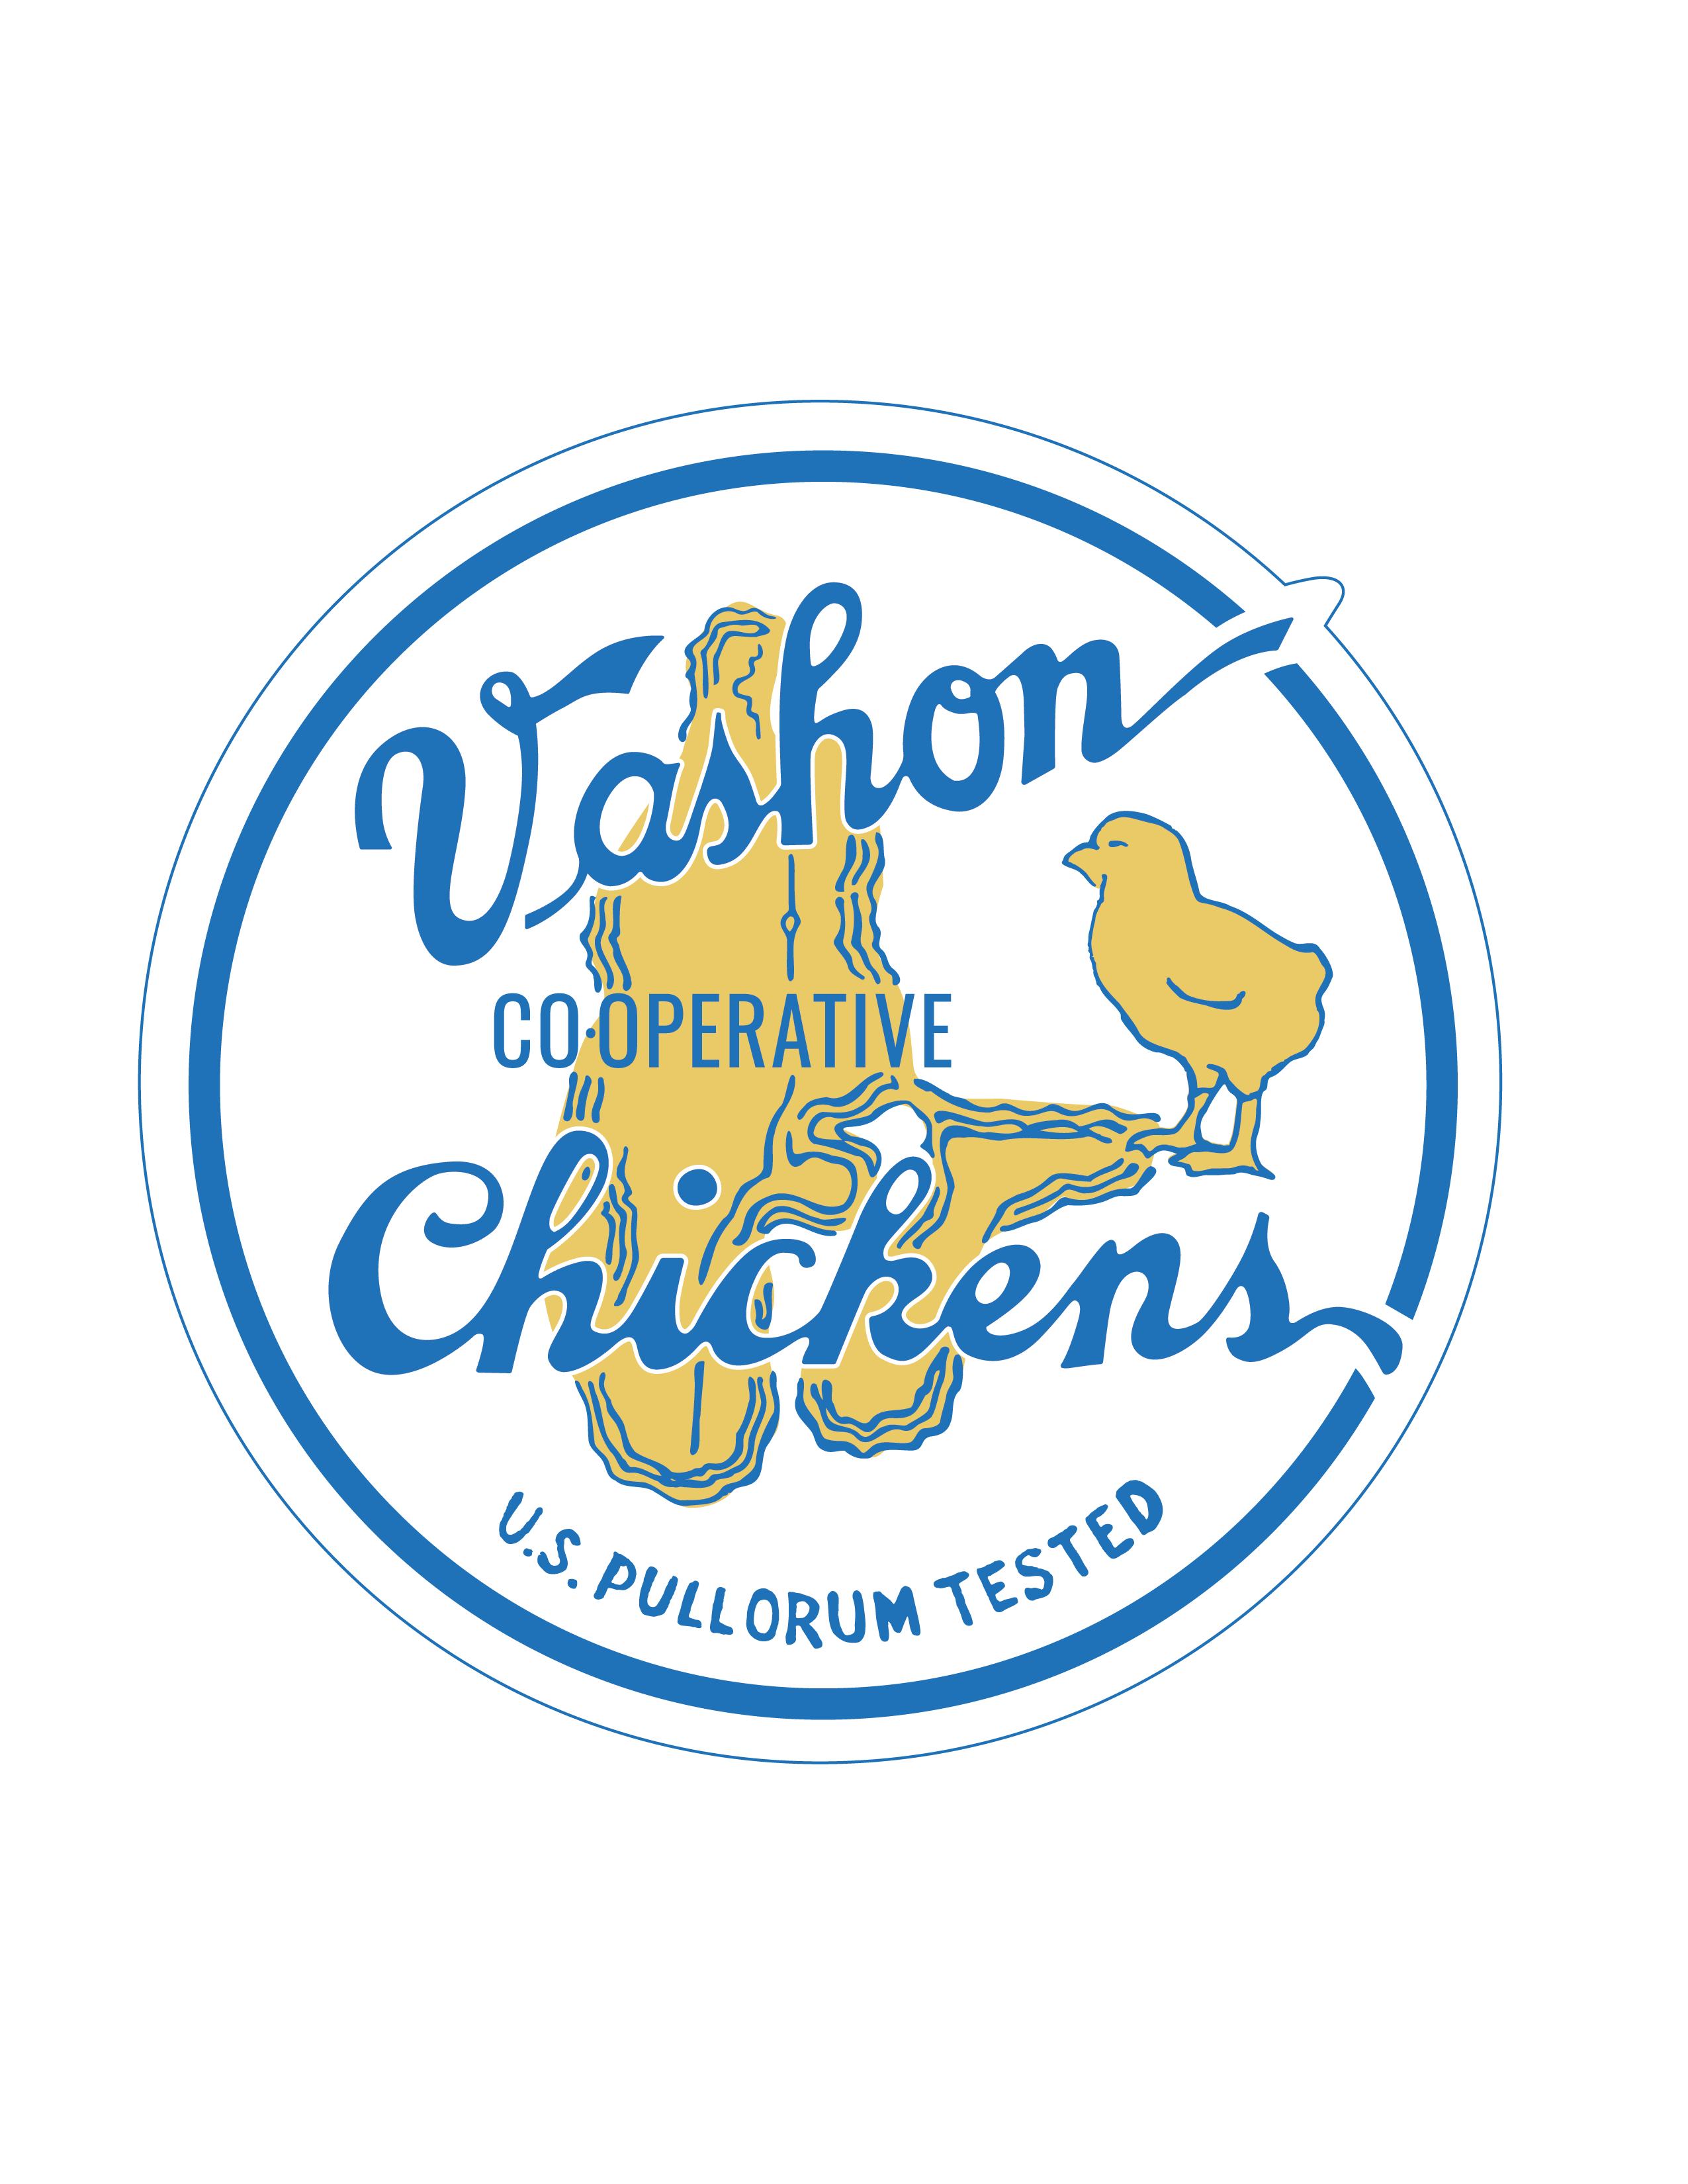 Vashon_Chicken_Graphic-02